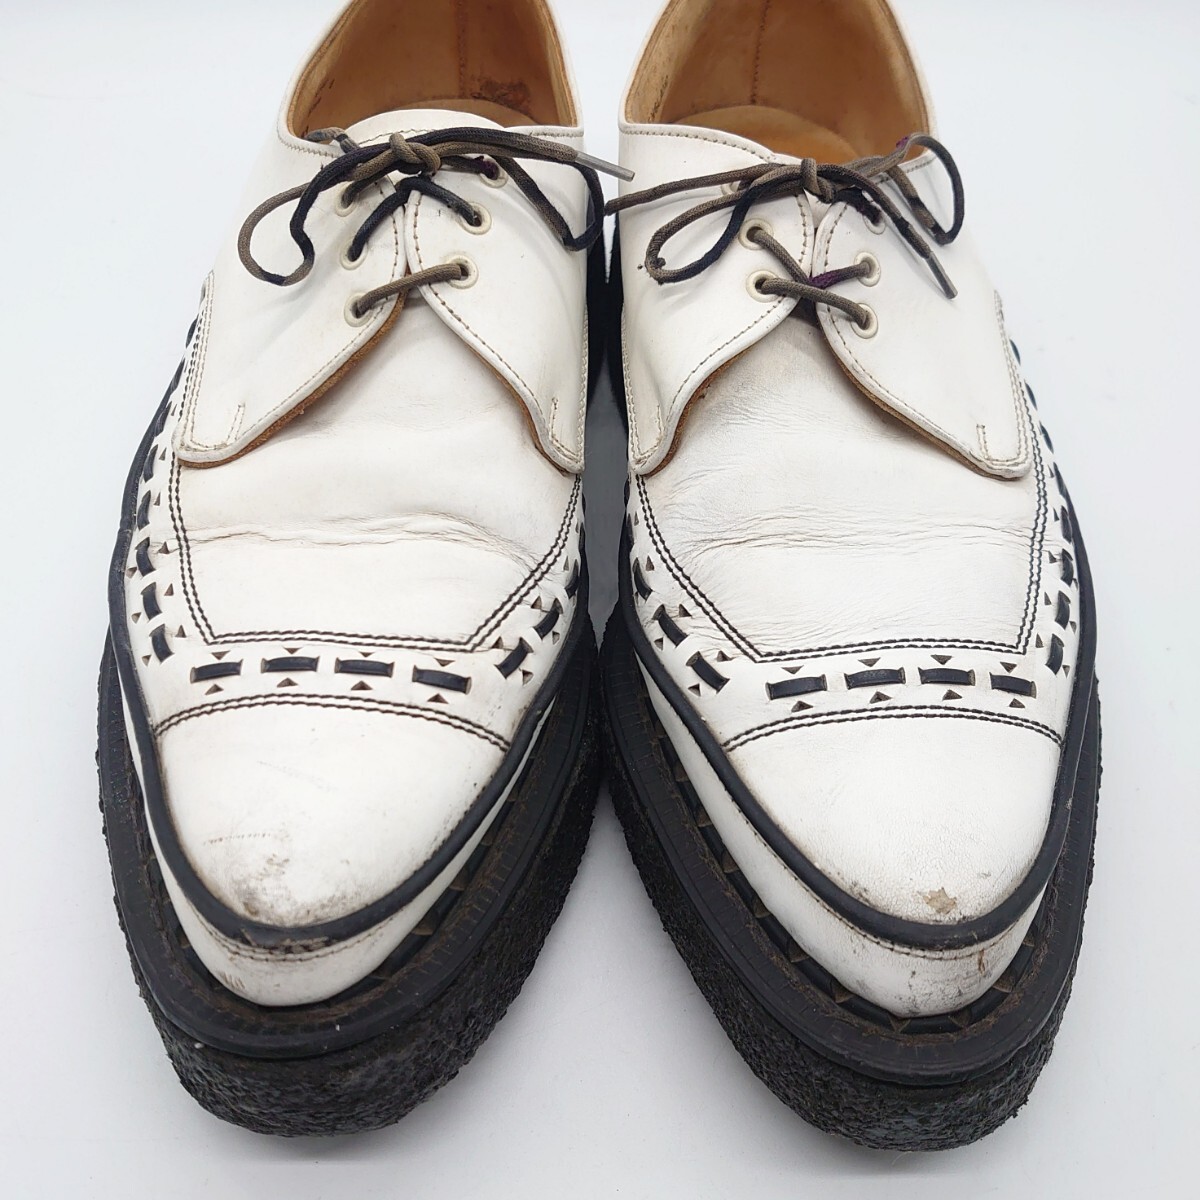 GEORGE COX ジョージコックス 5289 GIBSON ギブソン ラバーソール シューズ 靴 イングランド 英国製 ブラック ホワイト ブランド tp-24x290_画像4